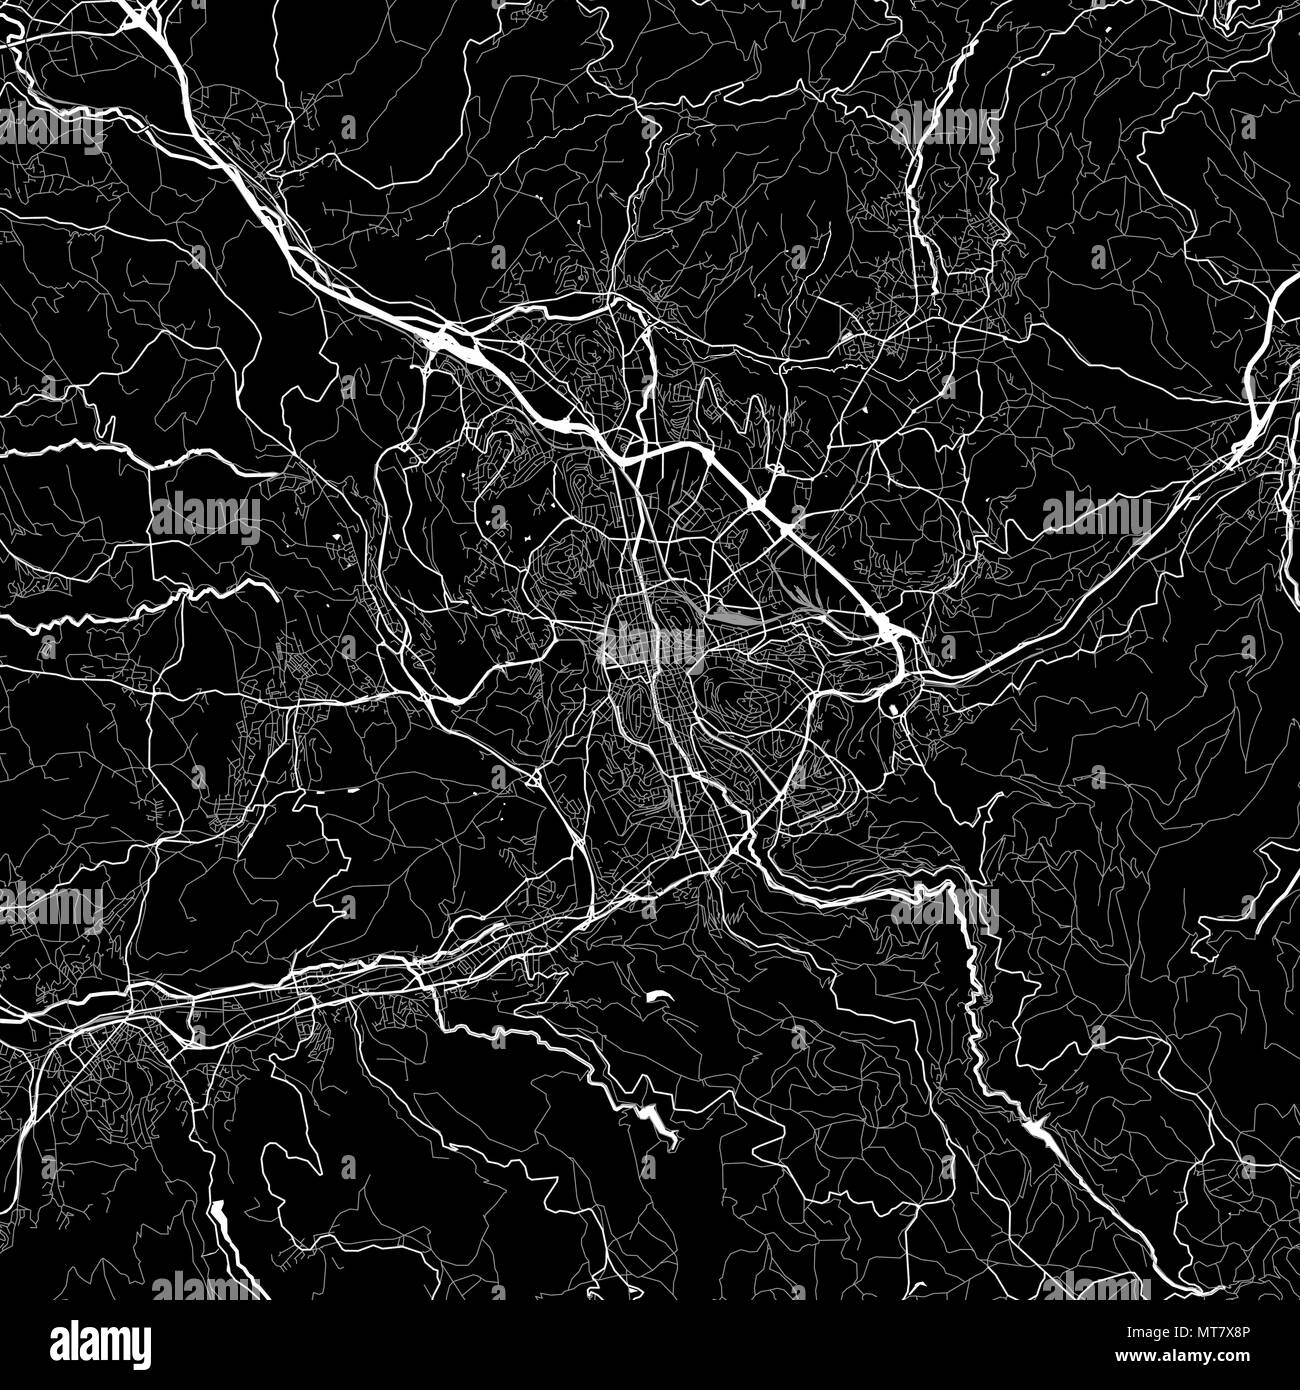 Mapa de la zona de Saint-Étienne, Francia. Fondo oscuro versión para infografía y proyectos de comercialización. Este mapa de Saint-Etienne, Loire, contiene típica Ilustración del Vector